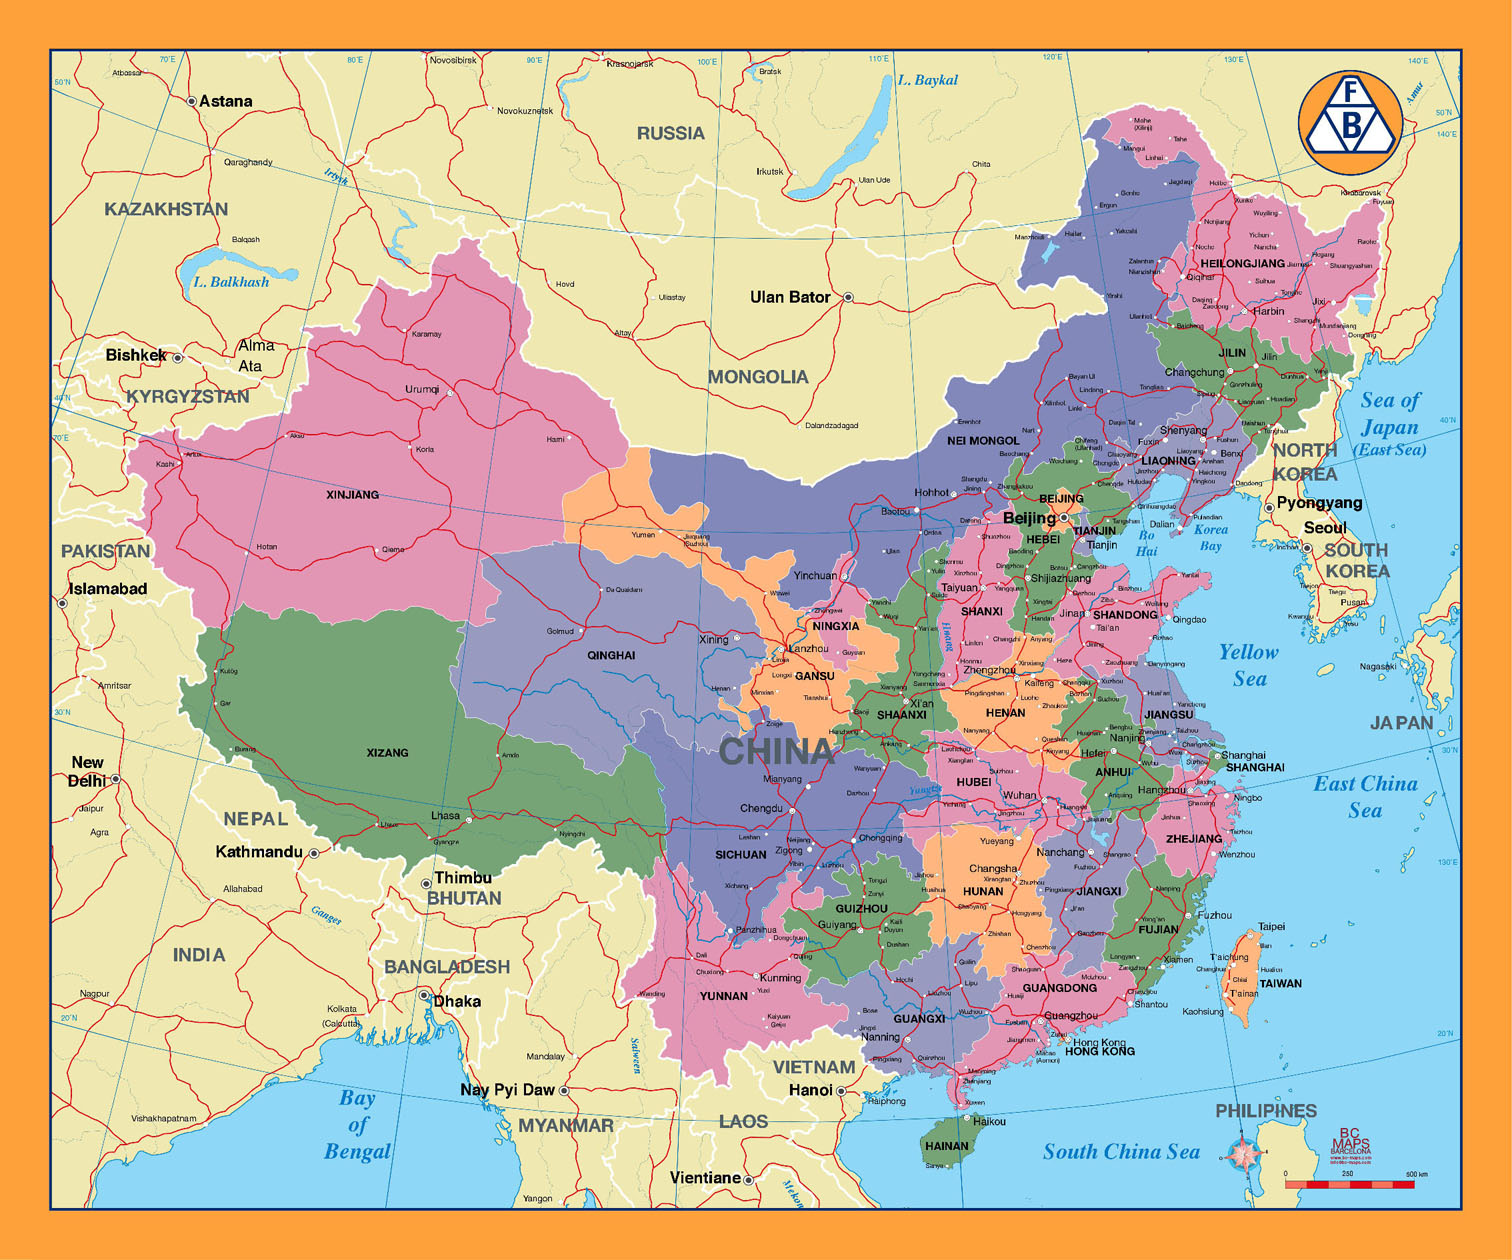 map of china and hong kong with cities 2020 China City Maps Maps Of Major Cities In China map of china and hong kong with cities